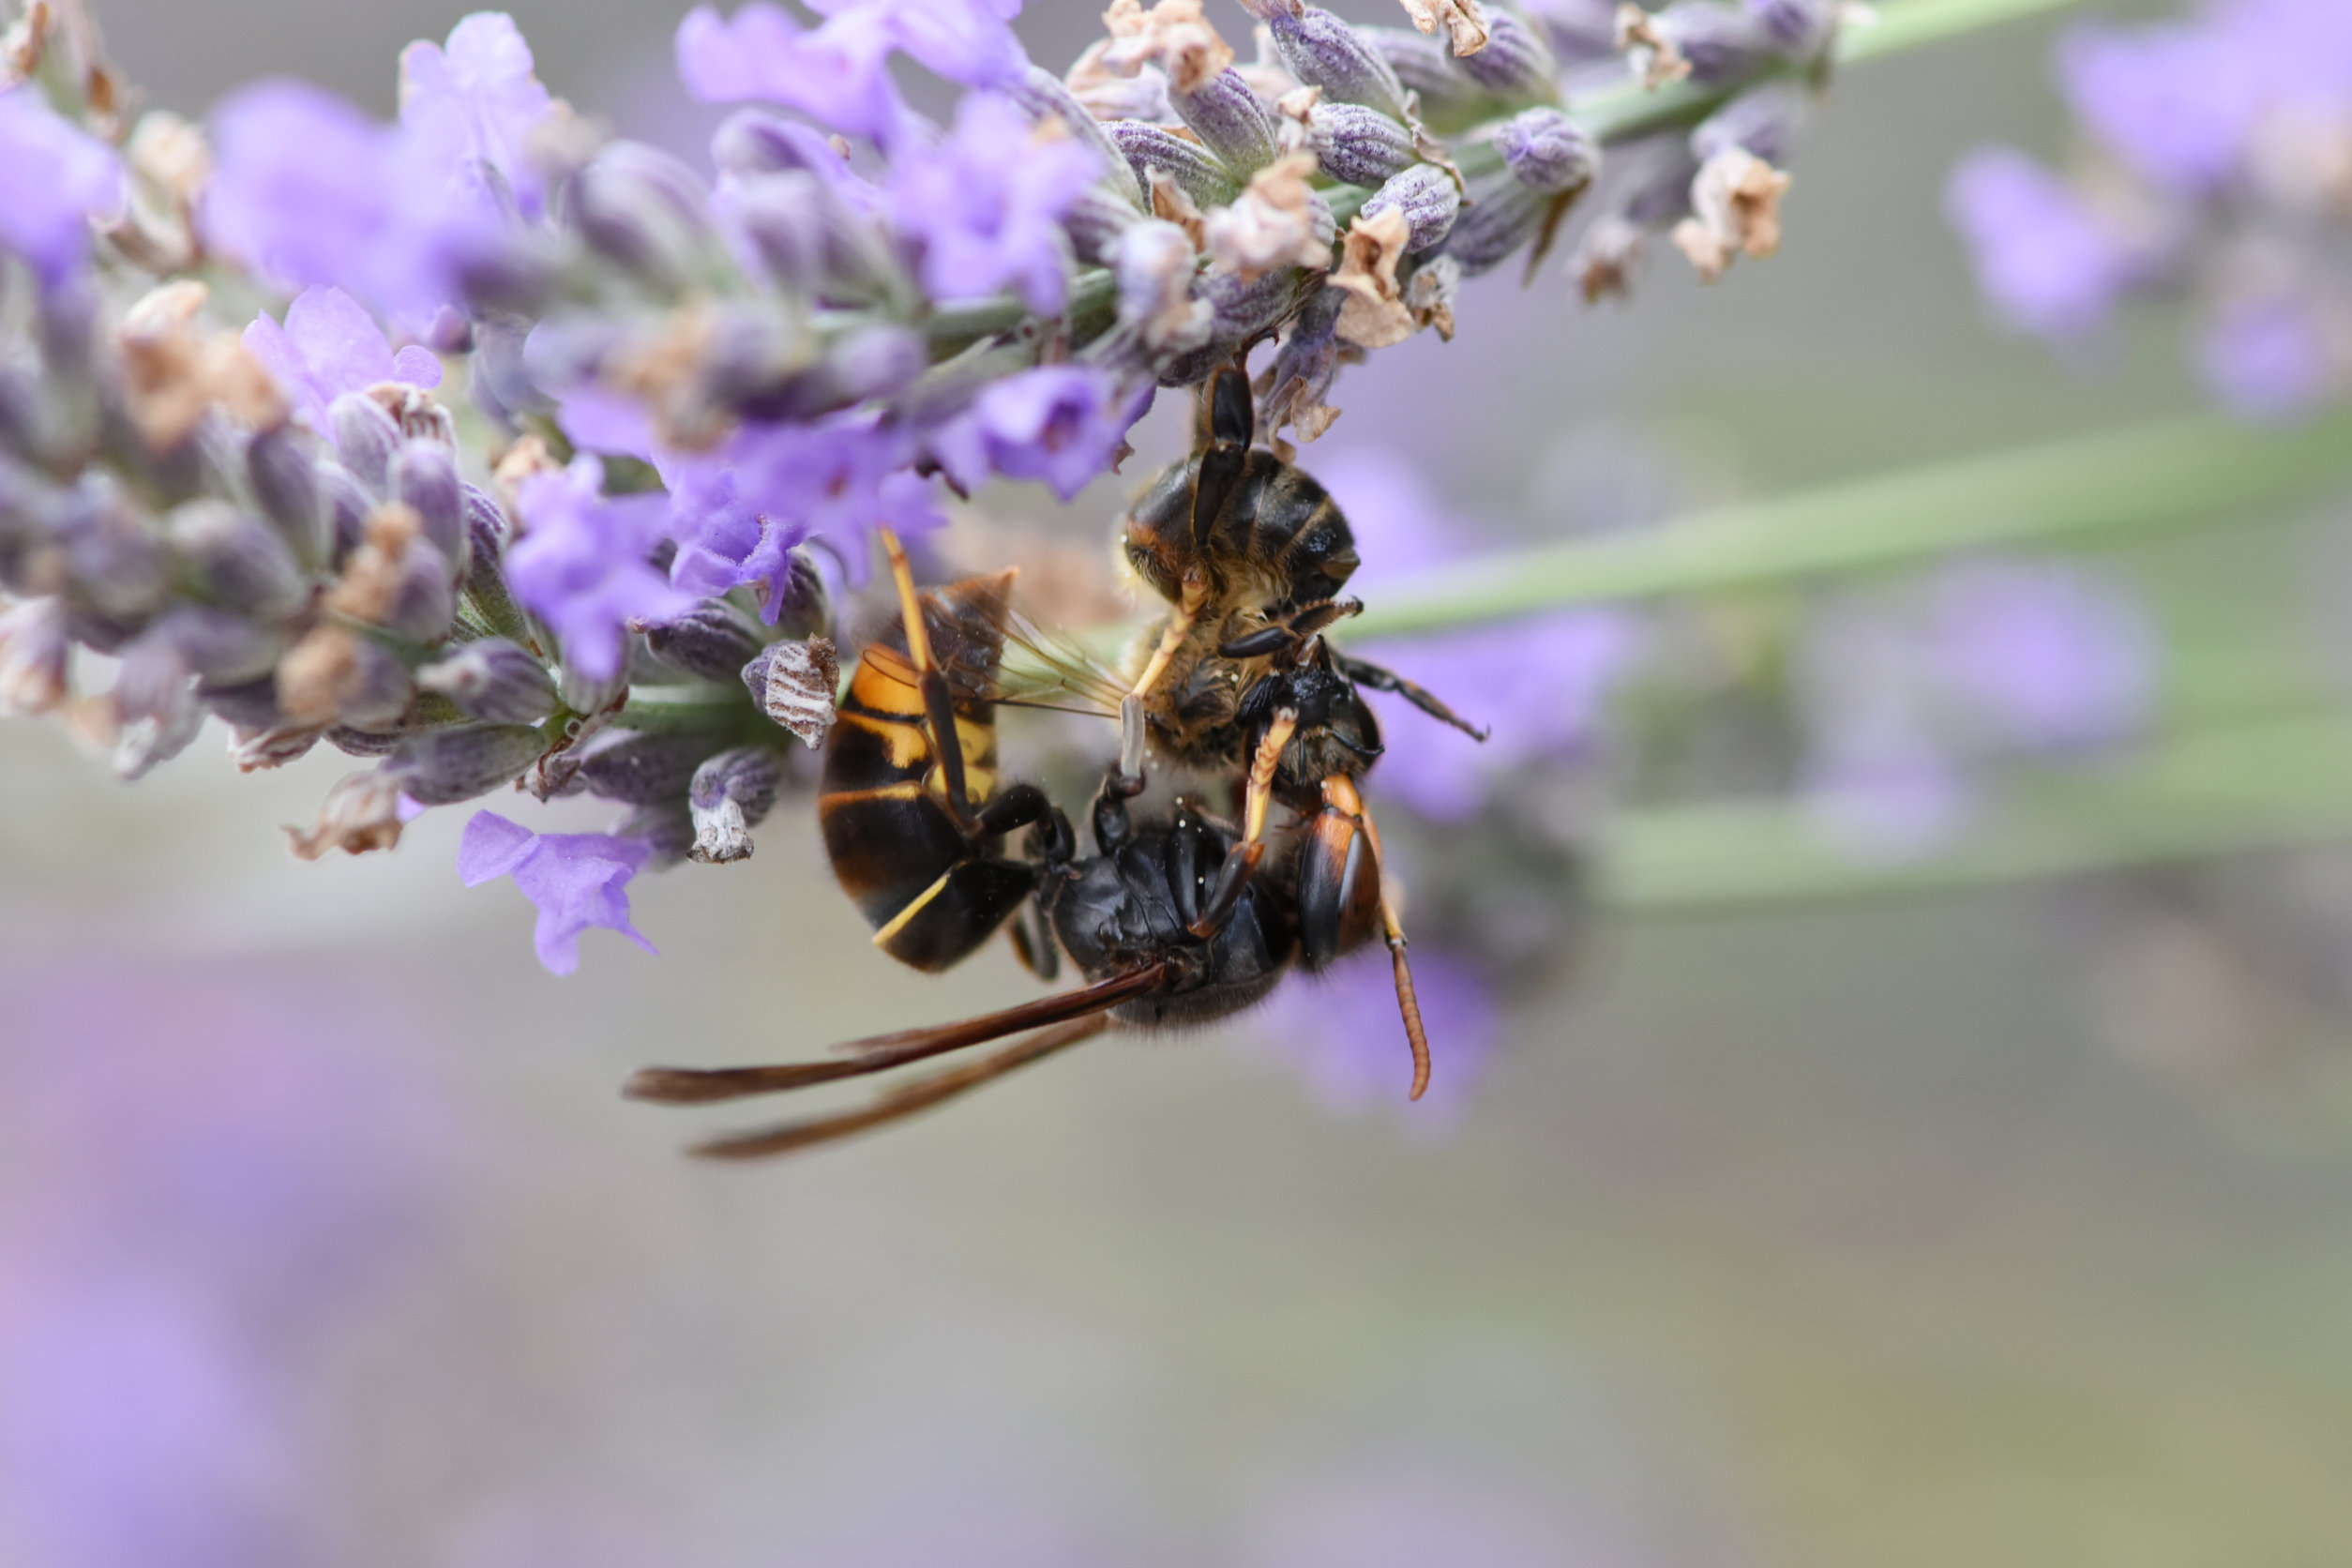 Aziatische hoornaar; hoe herken je hem en wat moet je doen? - Mamaliefde.nl